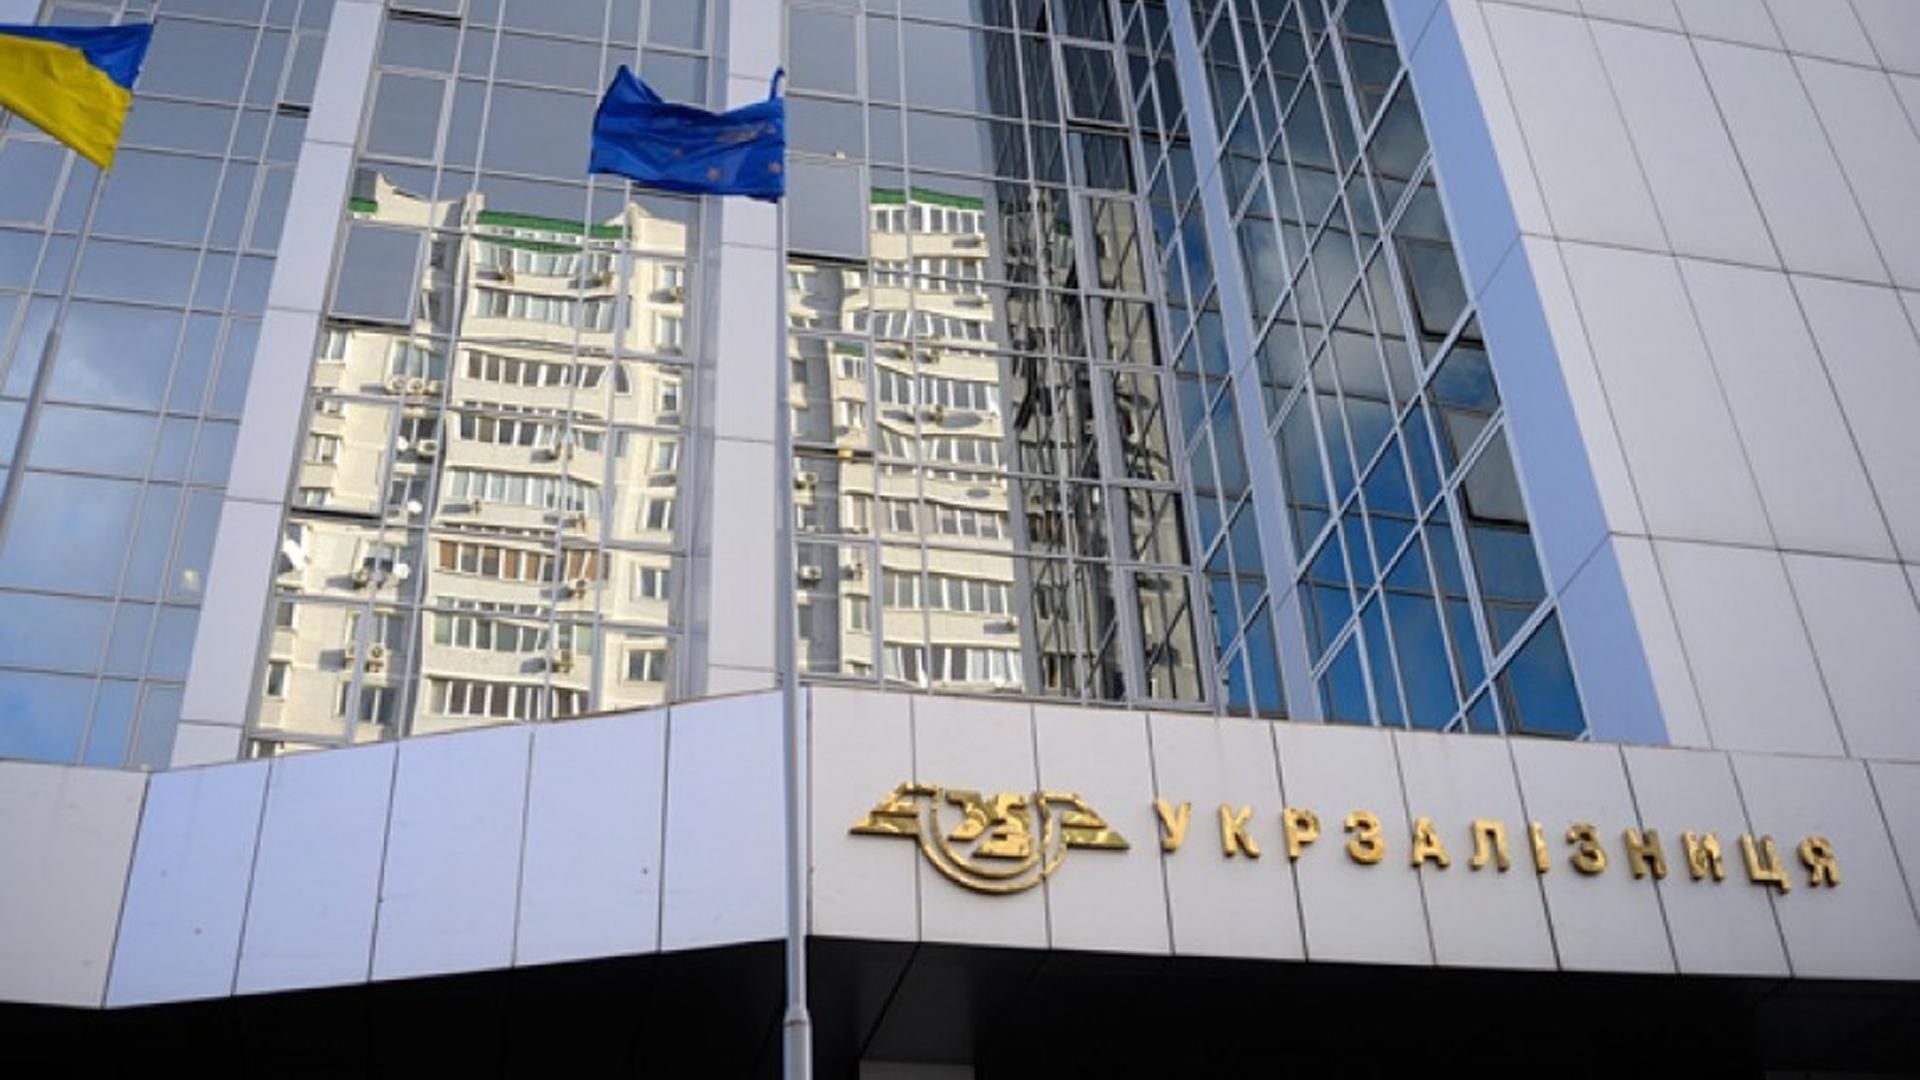 Укрзалізниця отримала 1,4 мільярда збитків за півроку - Новини економіки України - Економіка